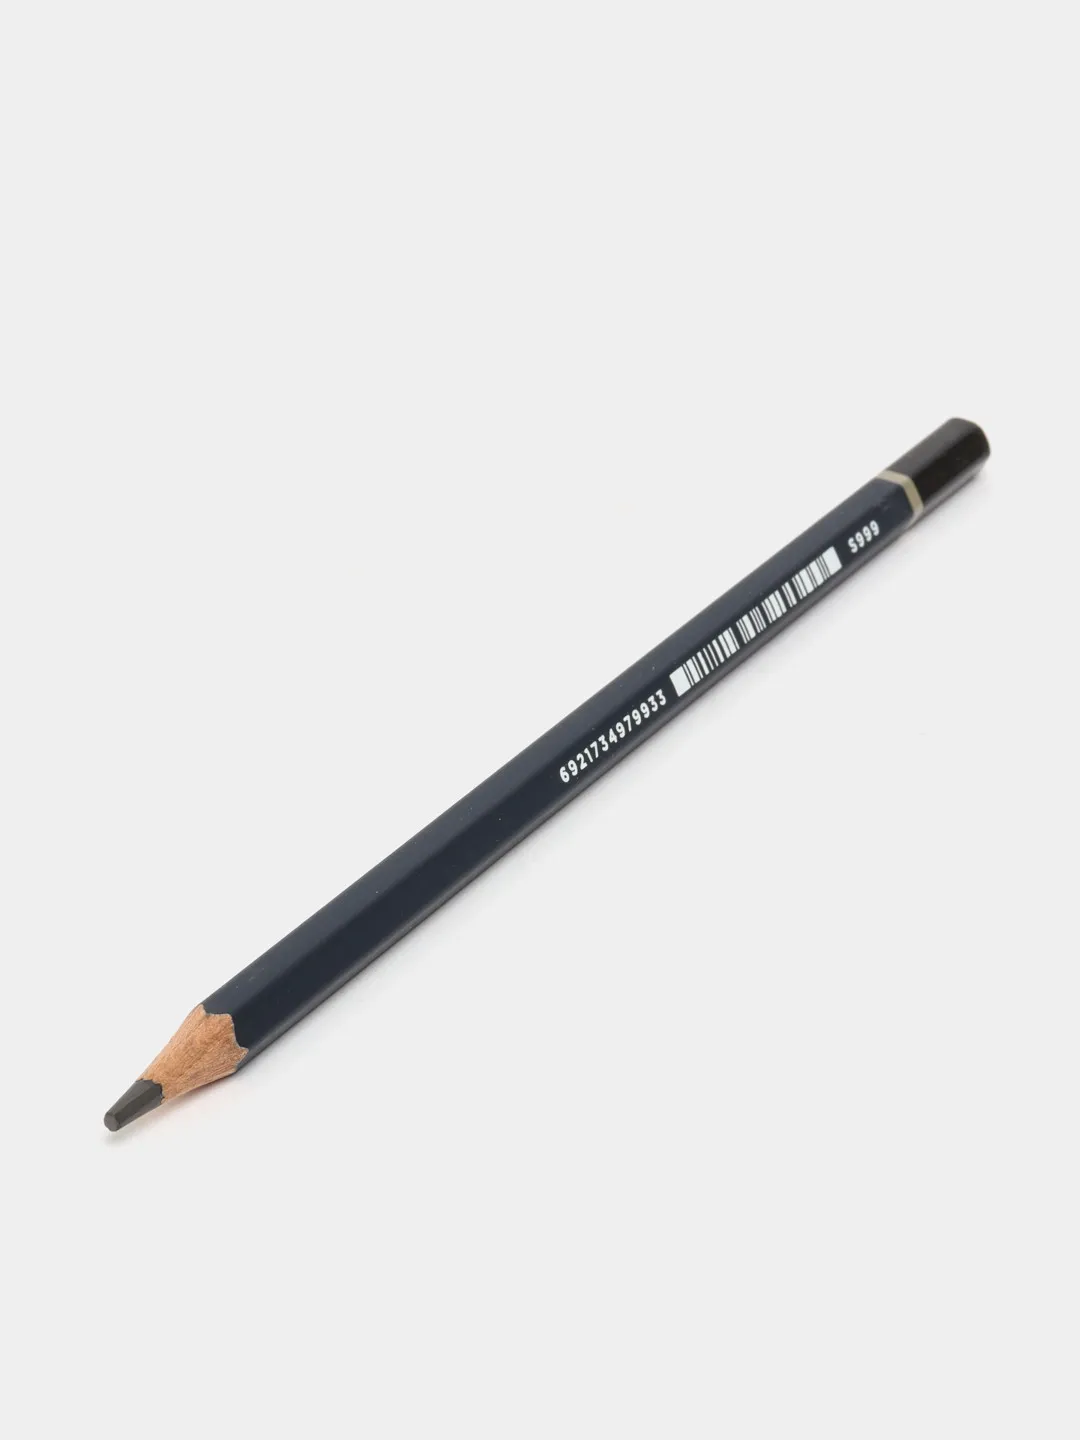 Pencil Nuevo 6B S999 Deli#1